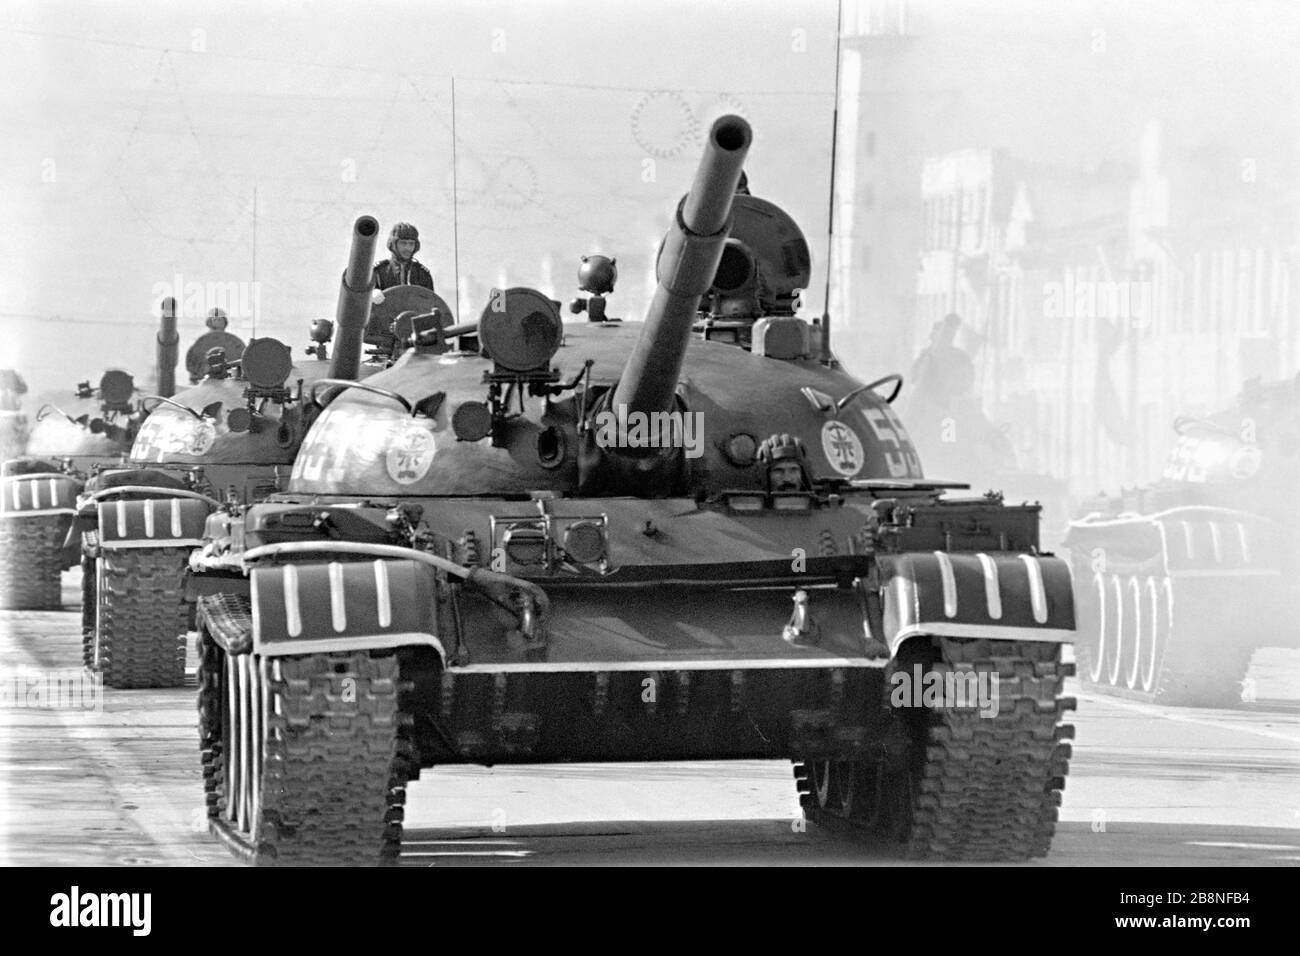 Afghanische Soldaten fahren während einer Militärparade mit einem sowjetischen T-62-Hauptkampftank, um den zehnten Jahrestag der kommunistischen Revolution am 26. April 1988 in Kabul, Afghanistan, zu begehen. Das kommunistische Regime übernahm die Macht in einer von der Sowjetunion unterstützten Revolte, die als Saurrevolution bekannt ist. Stockfoto